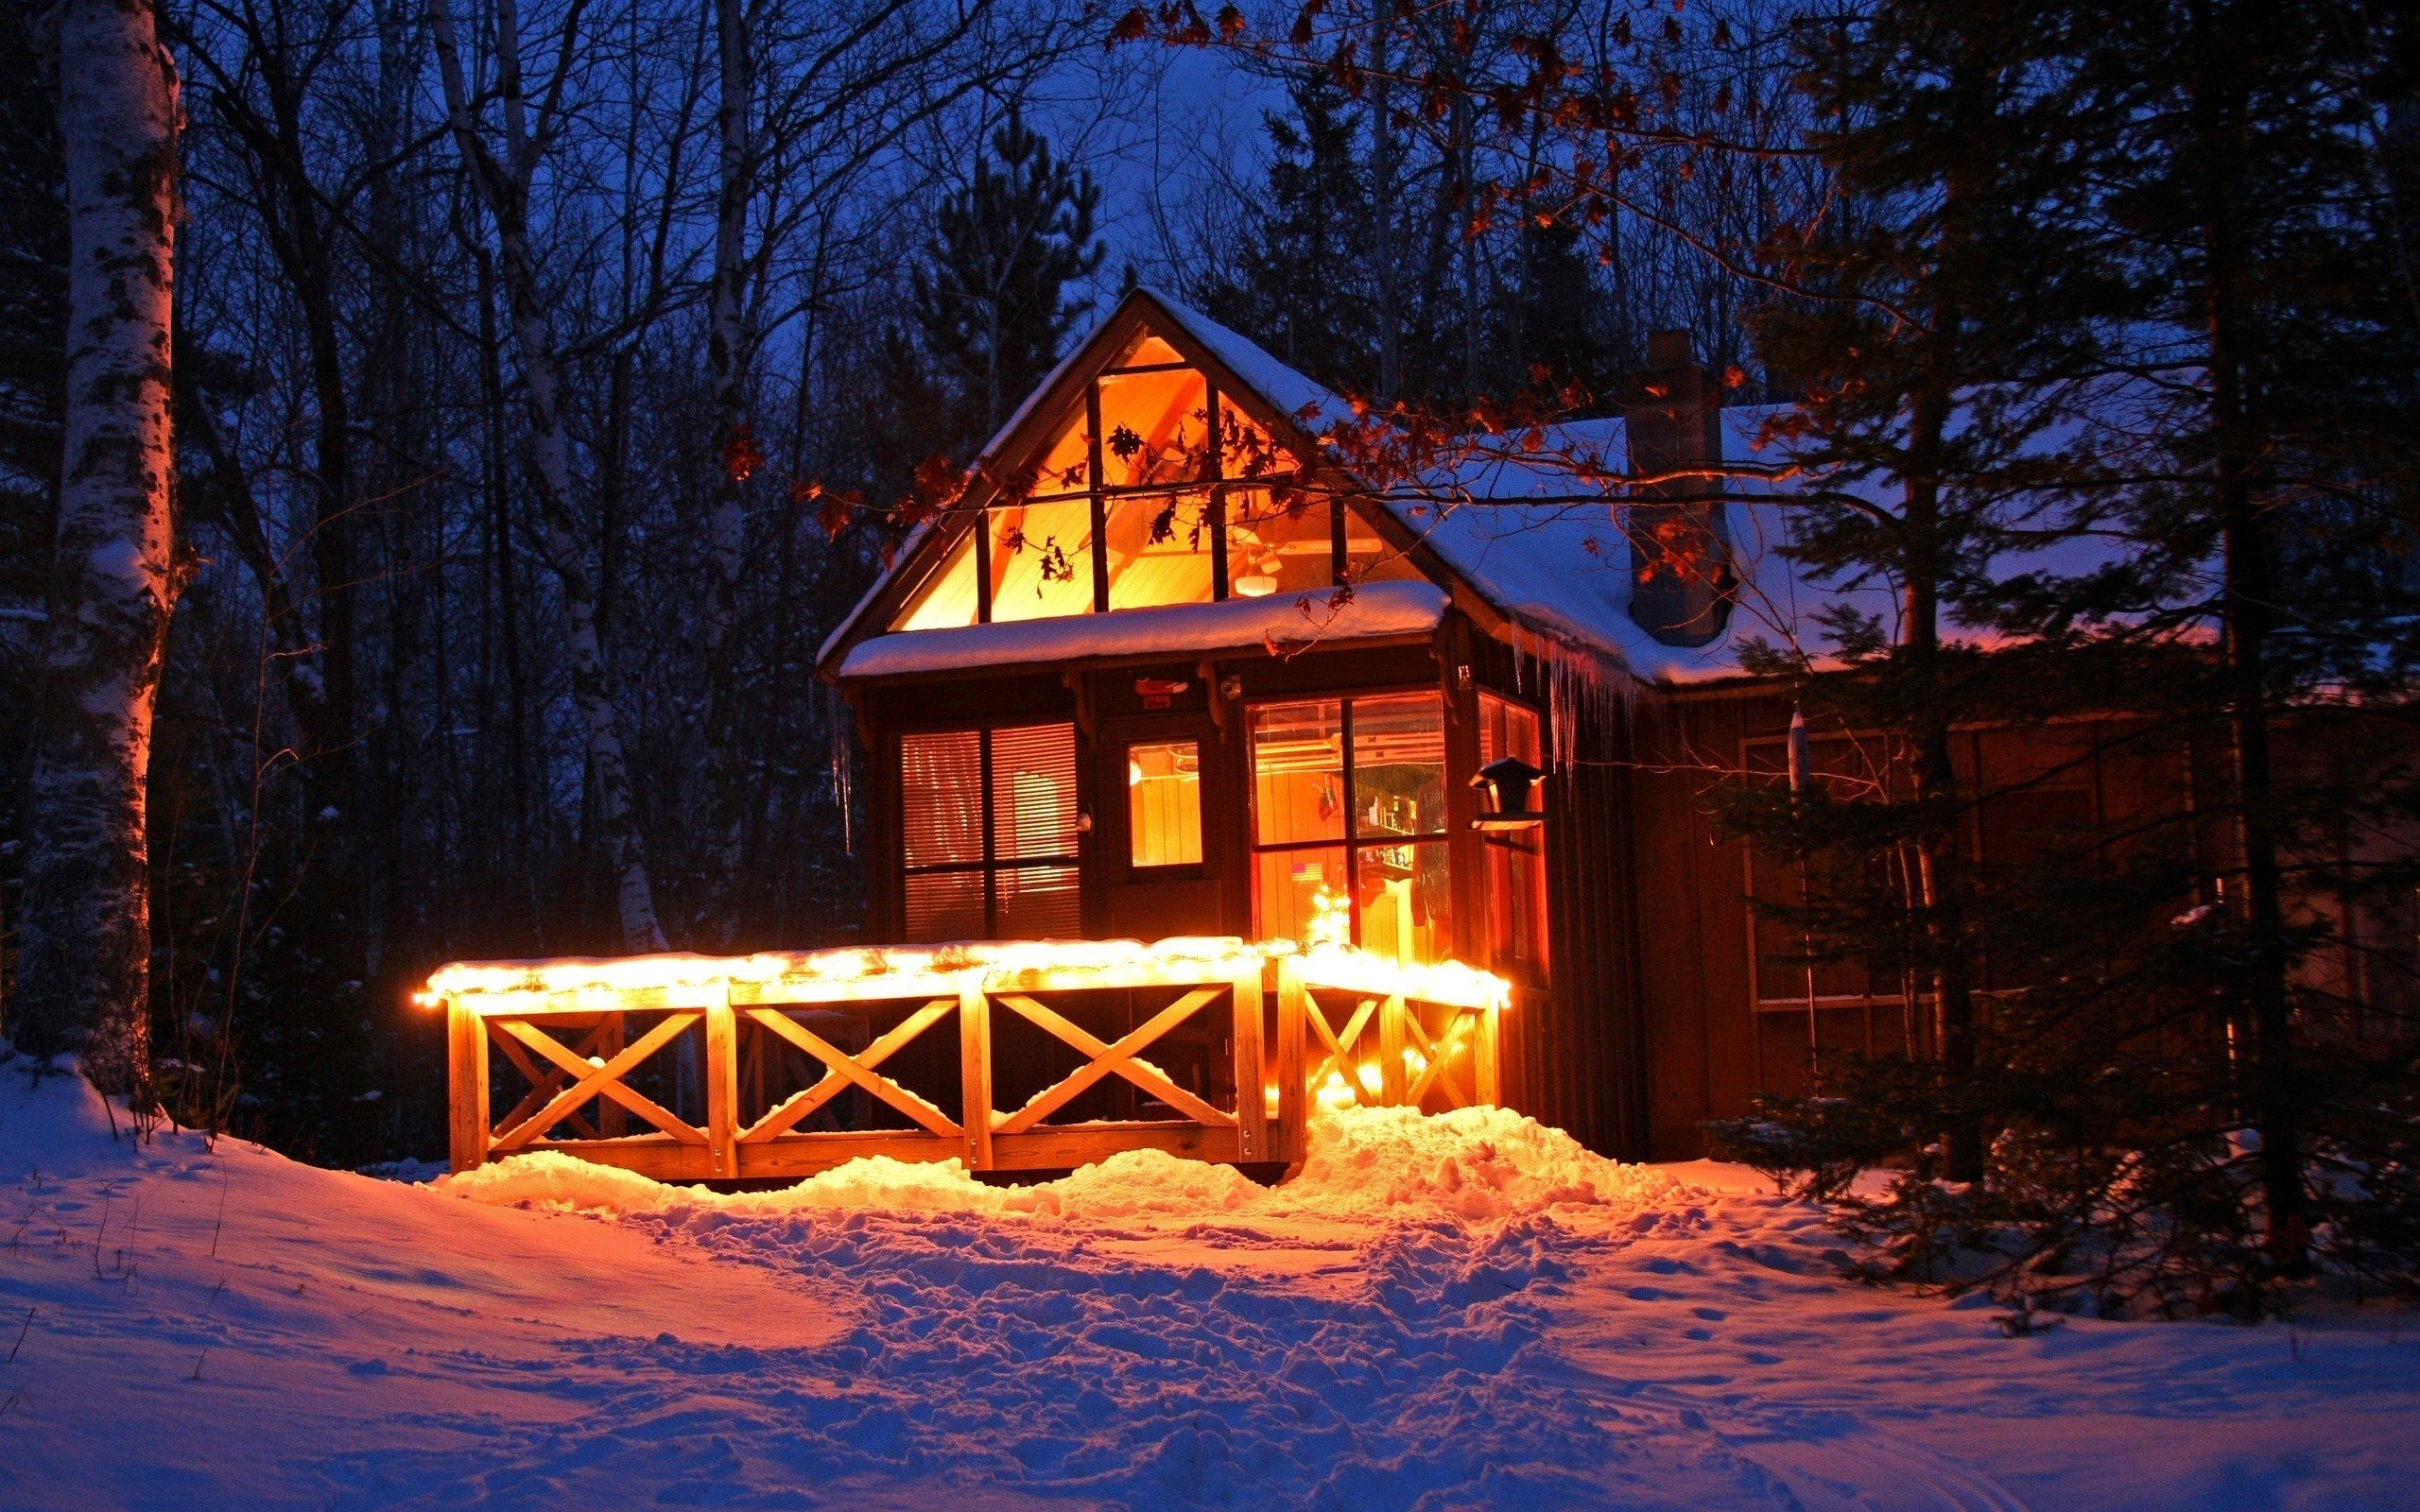 Winter Wallpaper - Winter Cabin In The Woods - HD Wallpaper 